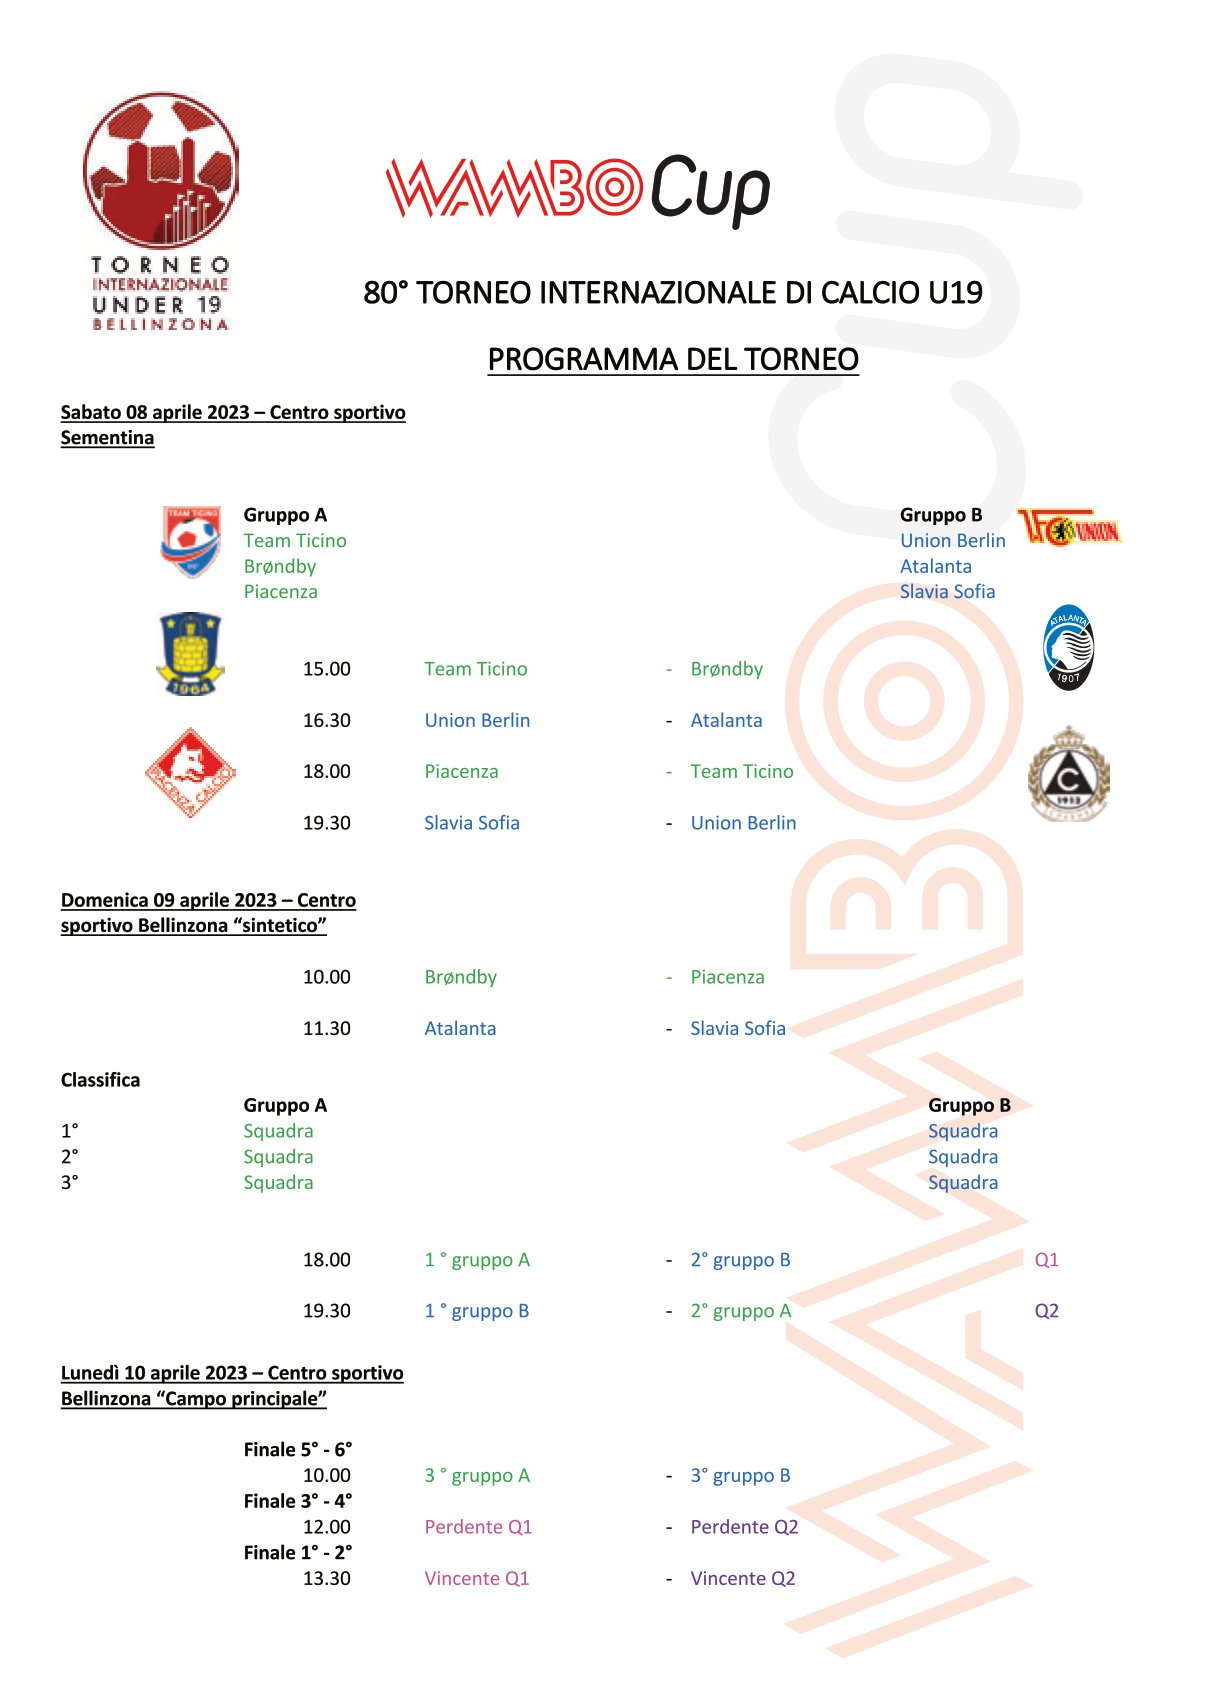 Zurigo: 5 partite e 5 formazioni diverse - FC Lugano